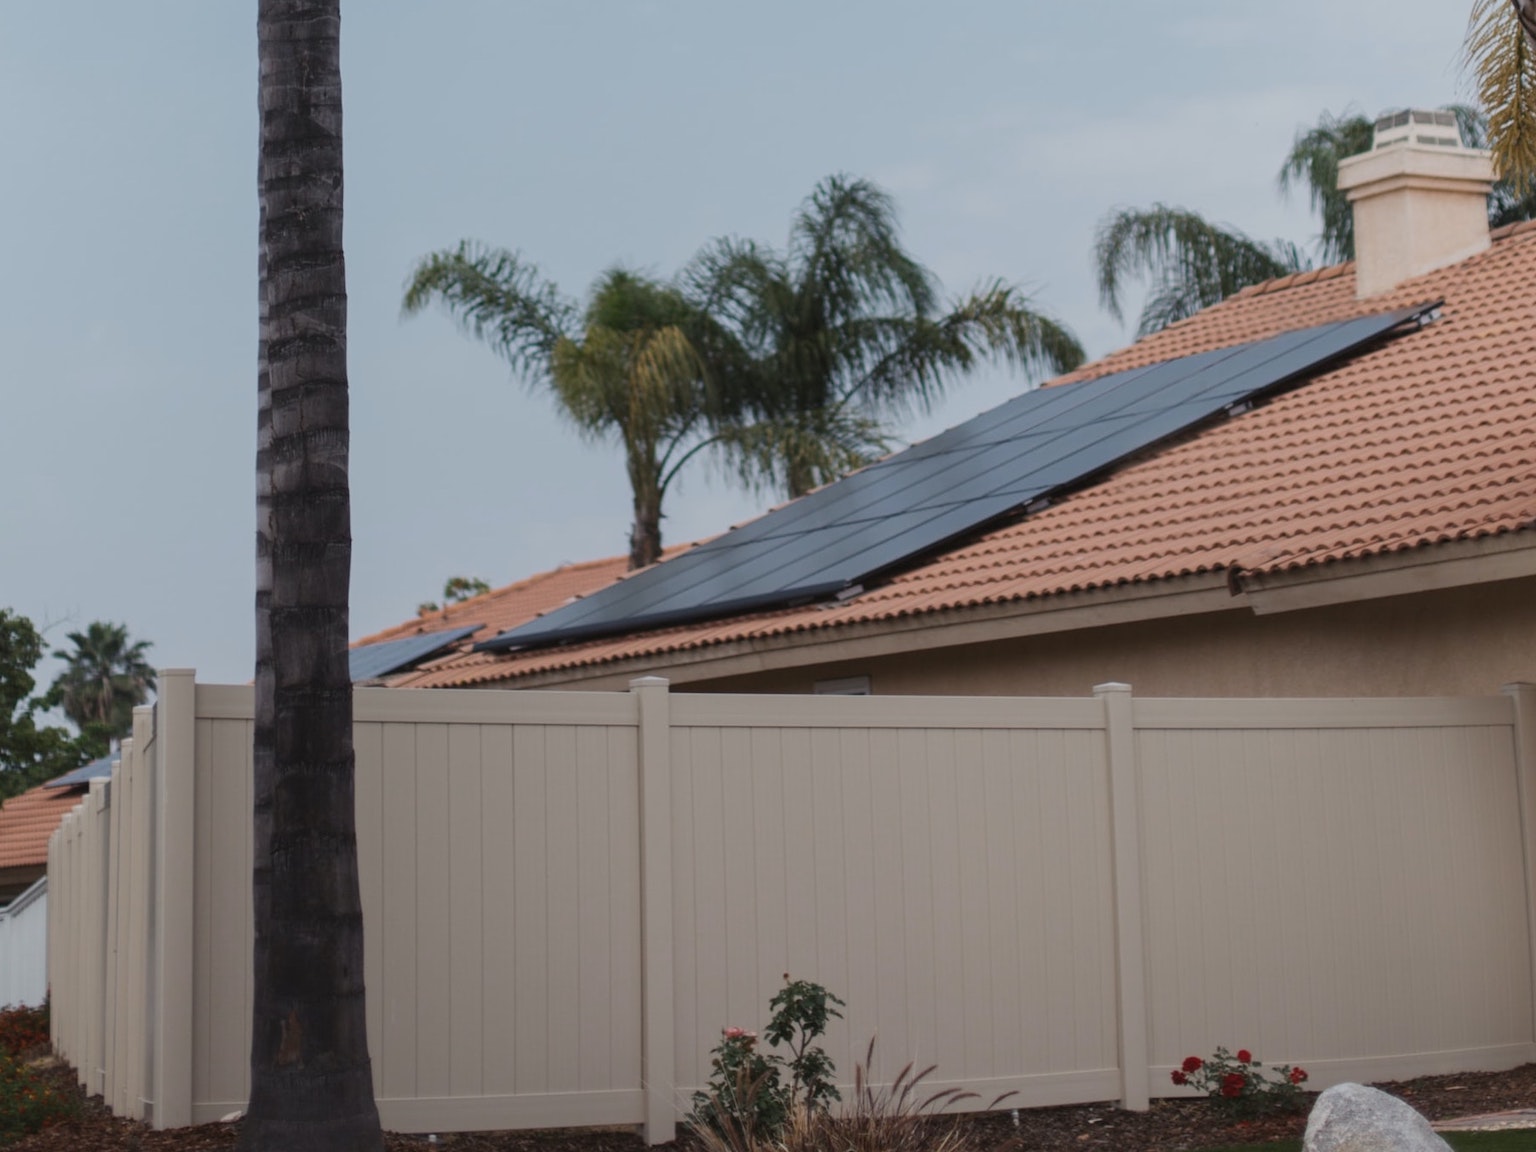 Casa com painel fotovoltaico instalado no telhado